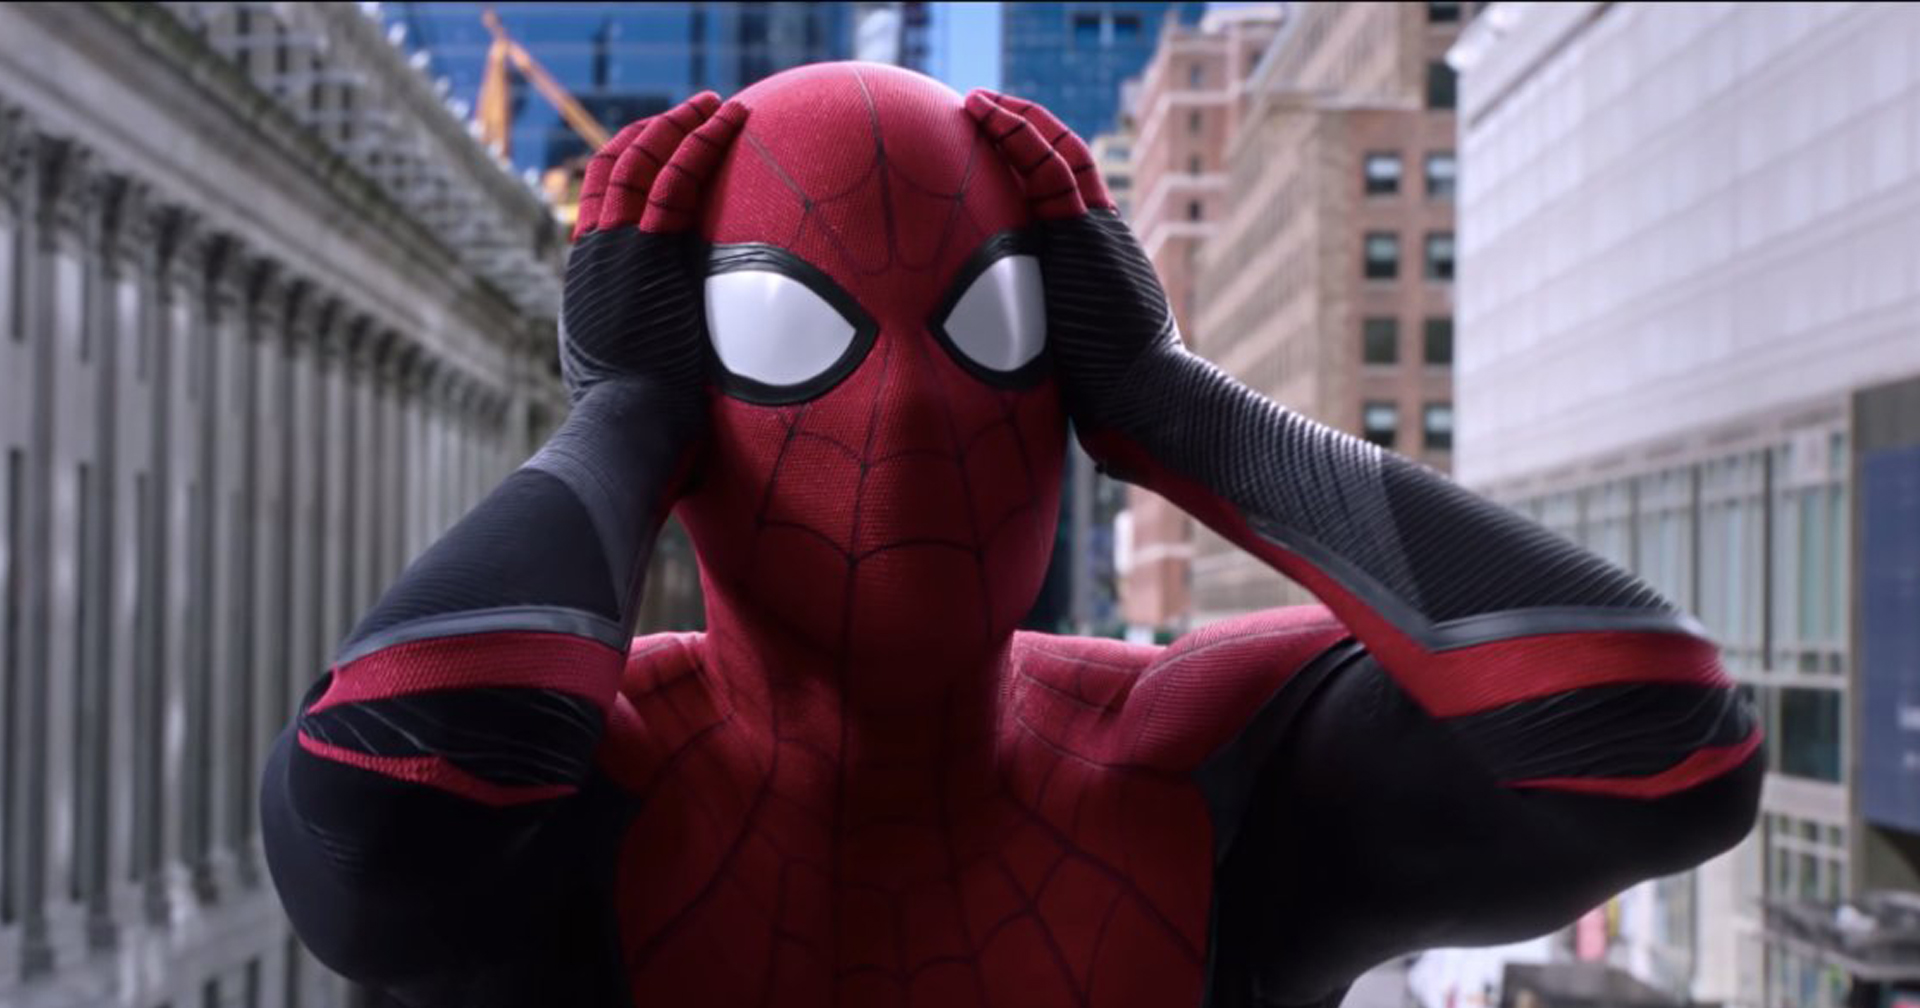 Spider-Man: No Way Home งานเข้าอีกแล้ว หลังตัวอย่างหนังหลุดว่อนเน็ต